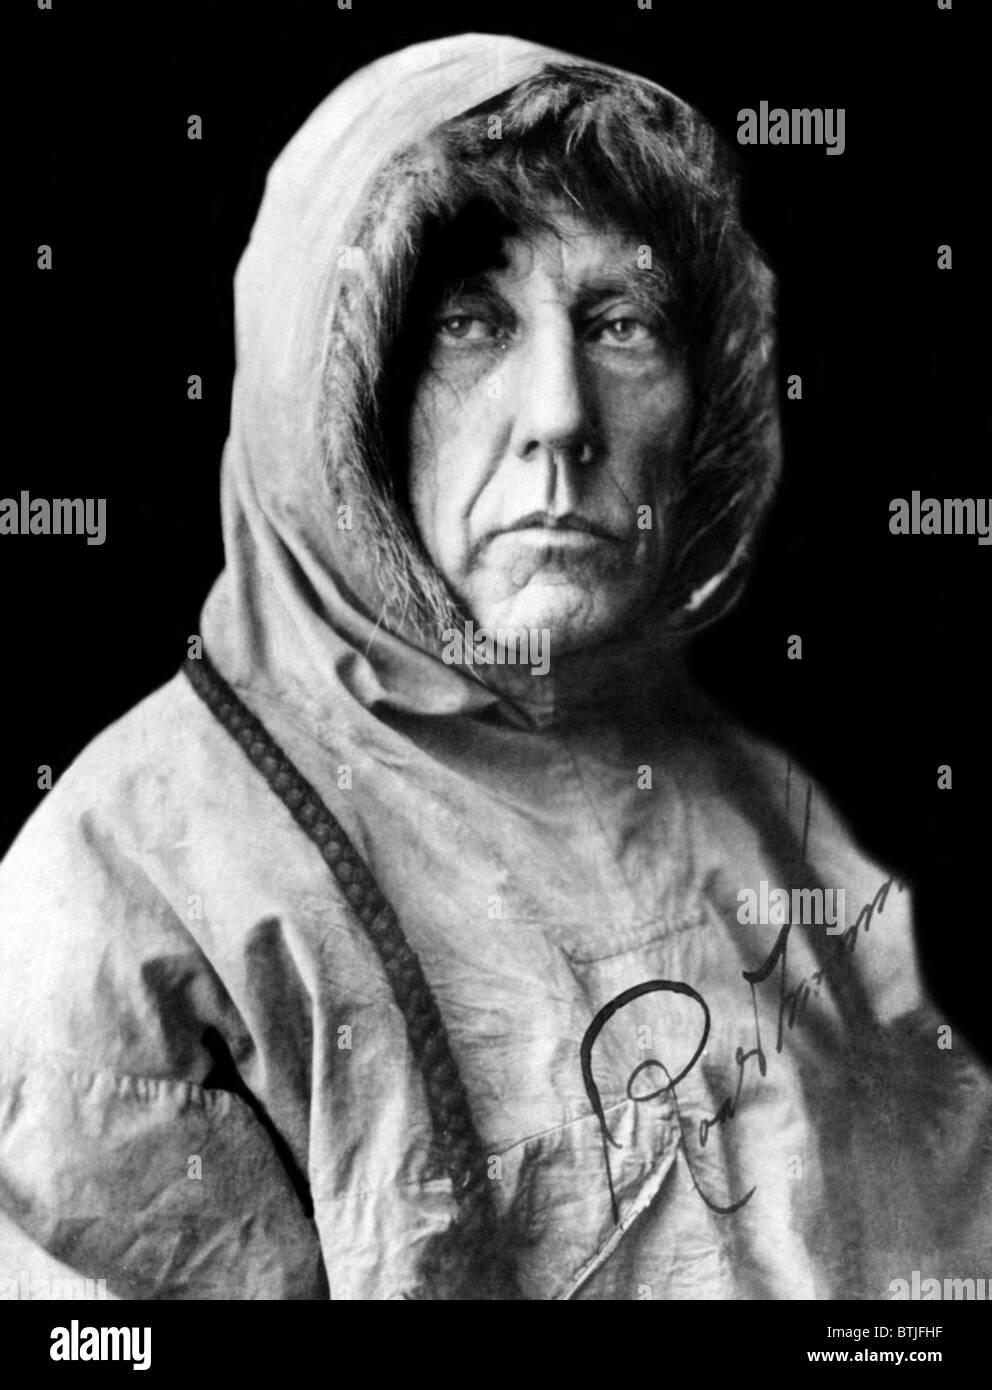 Roald Amundsen, le premier à atteindre le Pôle Sud. L'explorateur norvégien s'est rendue en 1911. Photo prise en 1925. Cou Banque D'Images